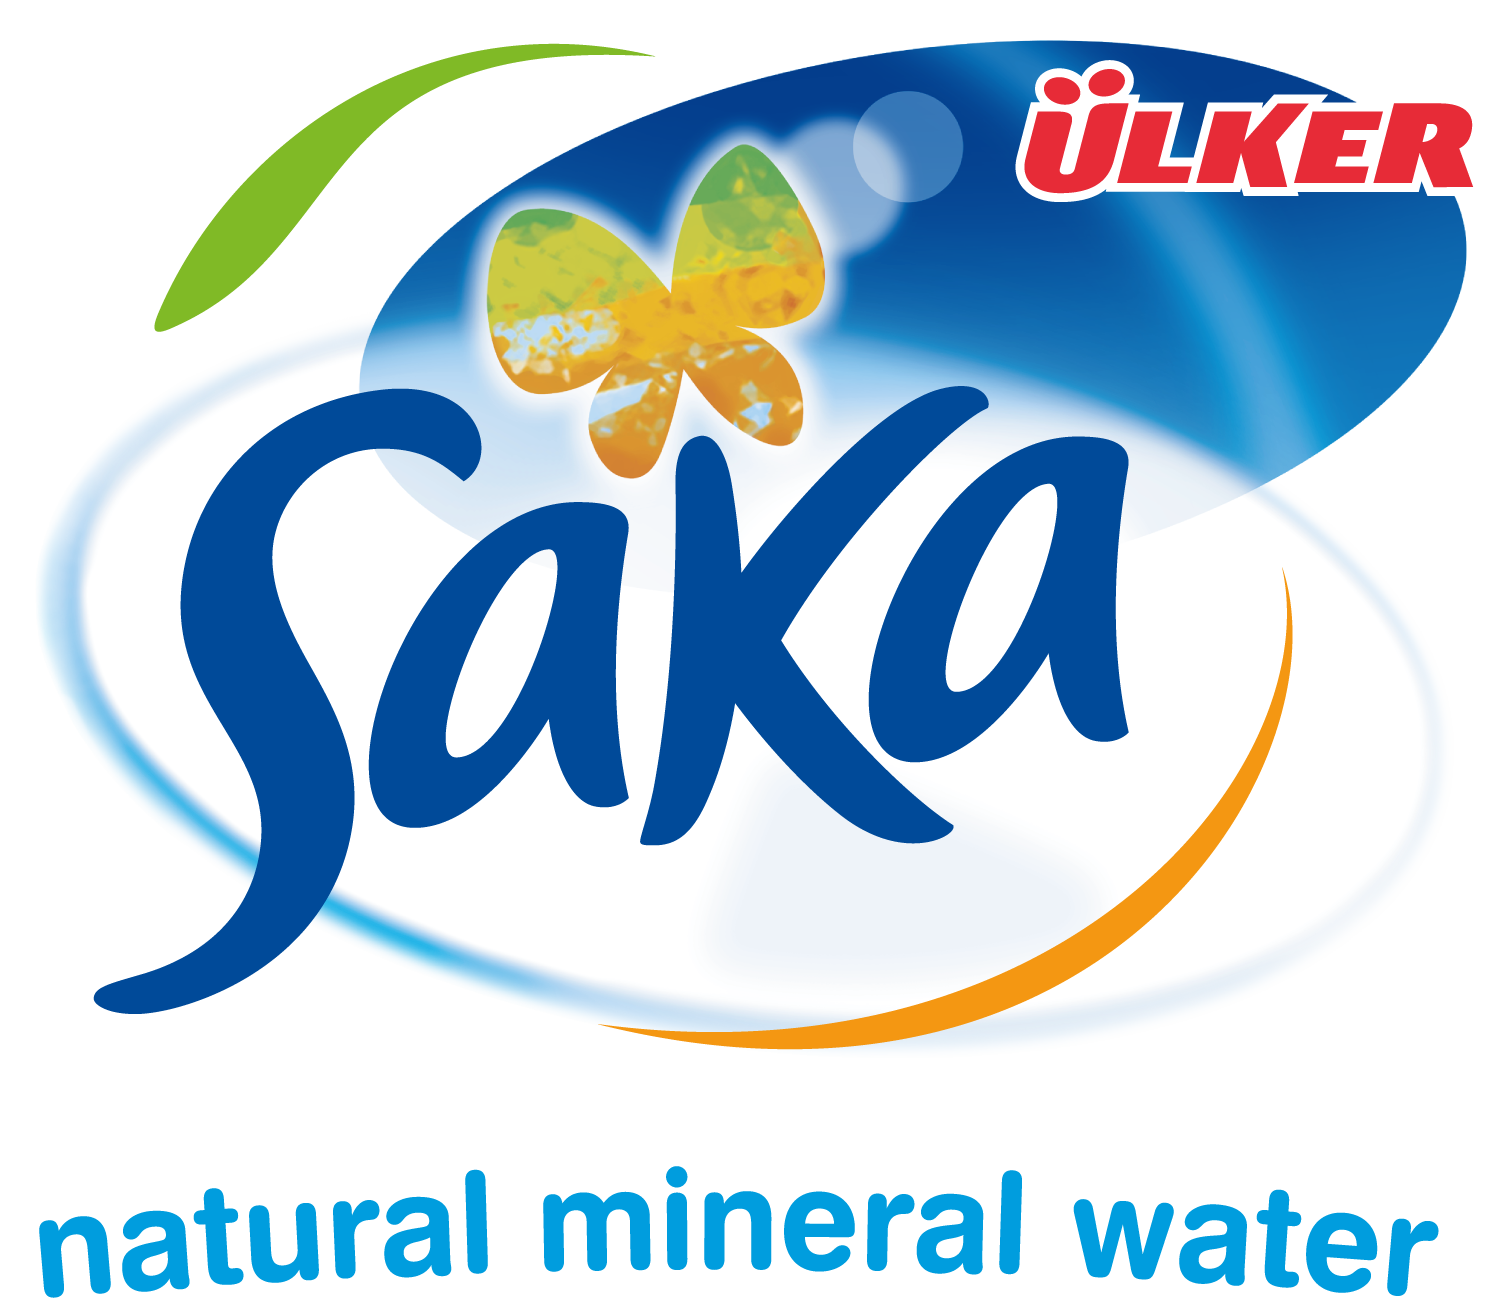 Saka-Ulker-logo-tagline#6A7